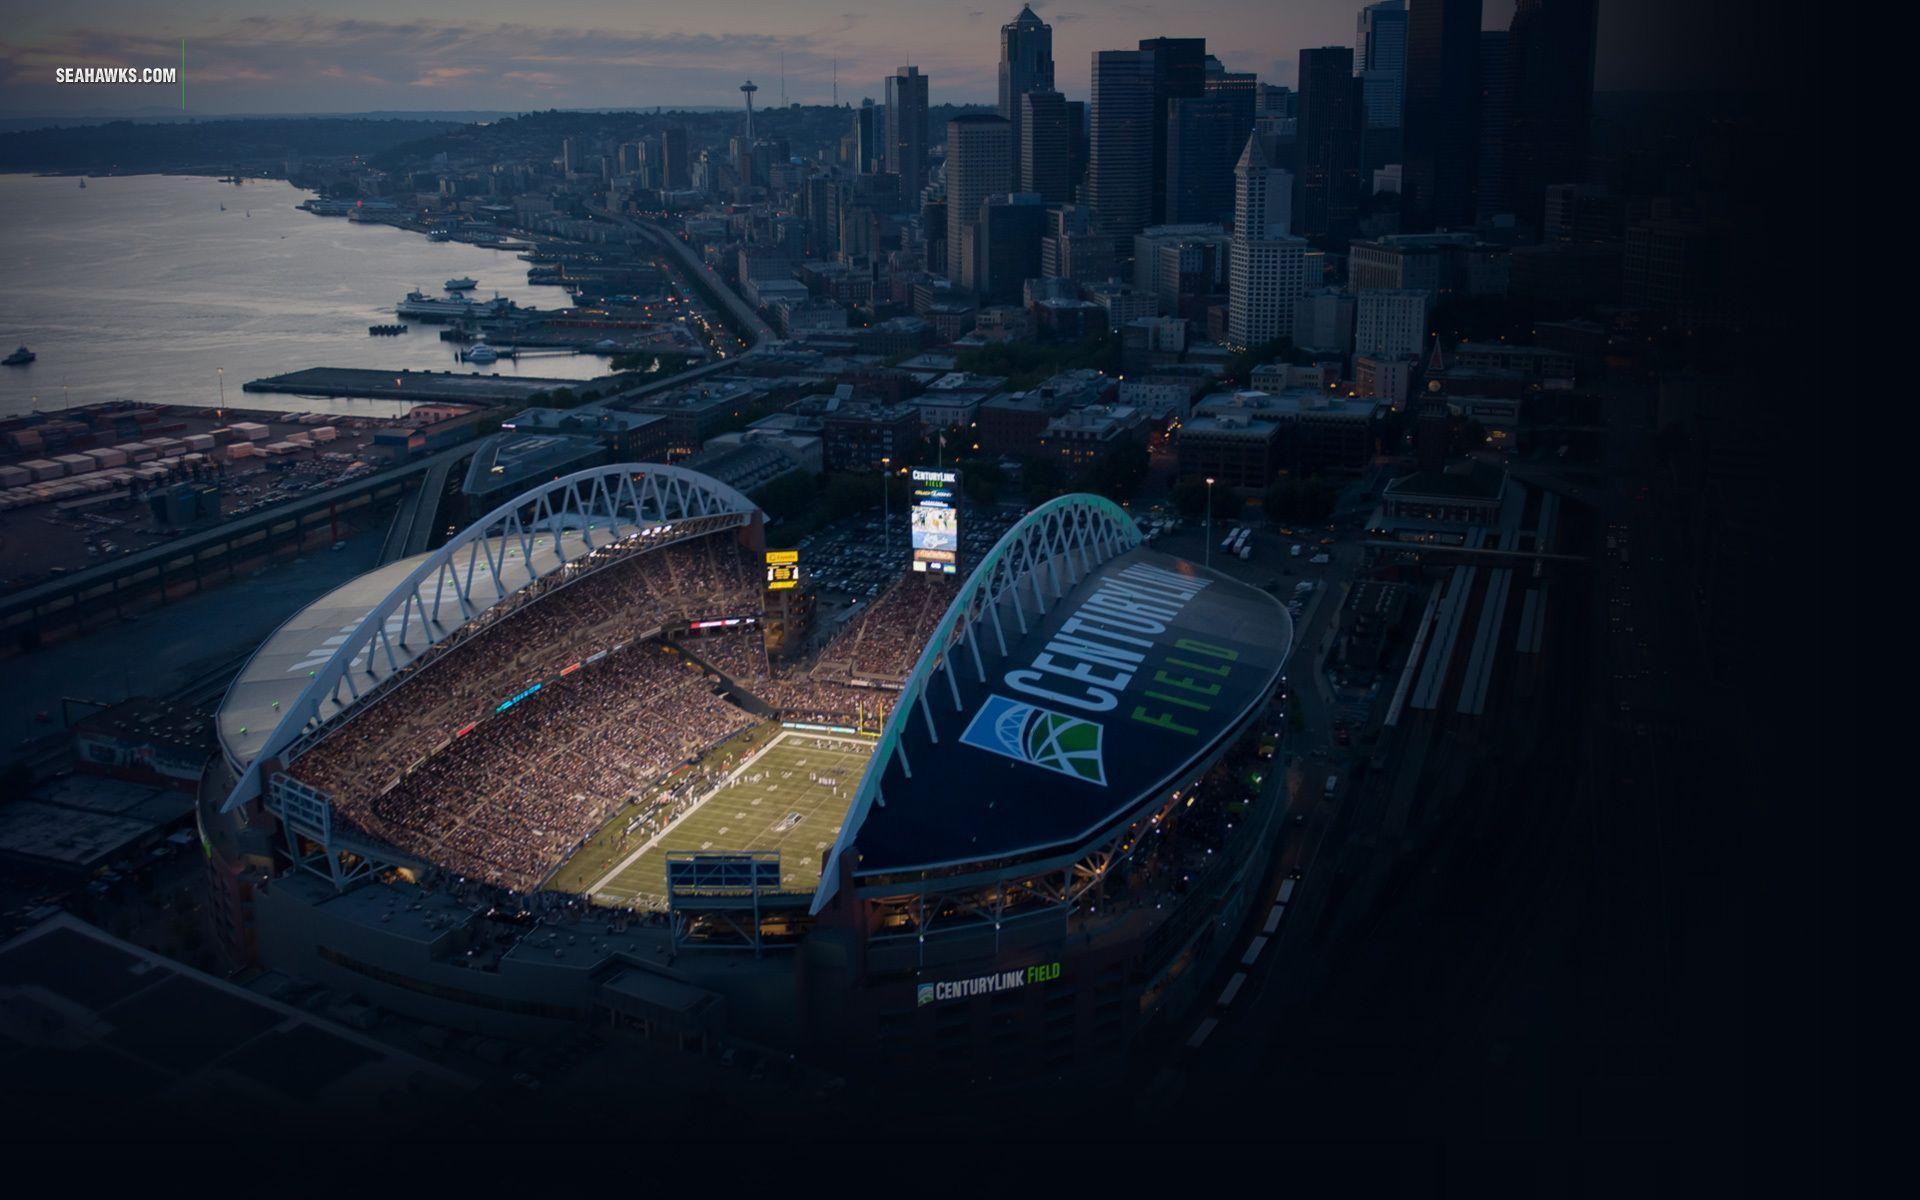 Seattle Seahawks HD wallpaper 1920x1080p wallpaper download